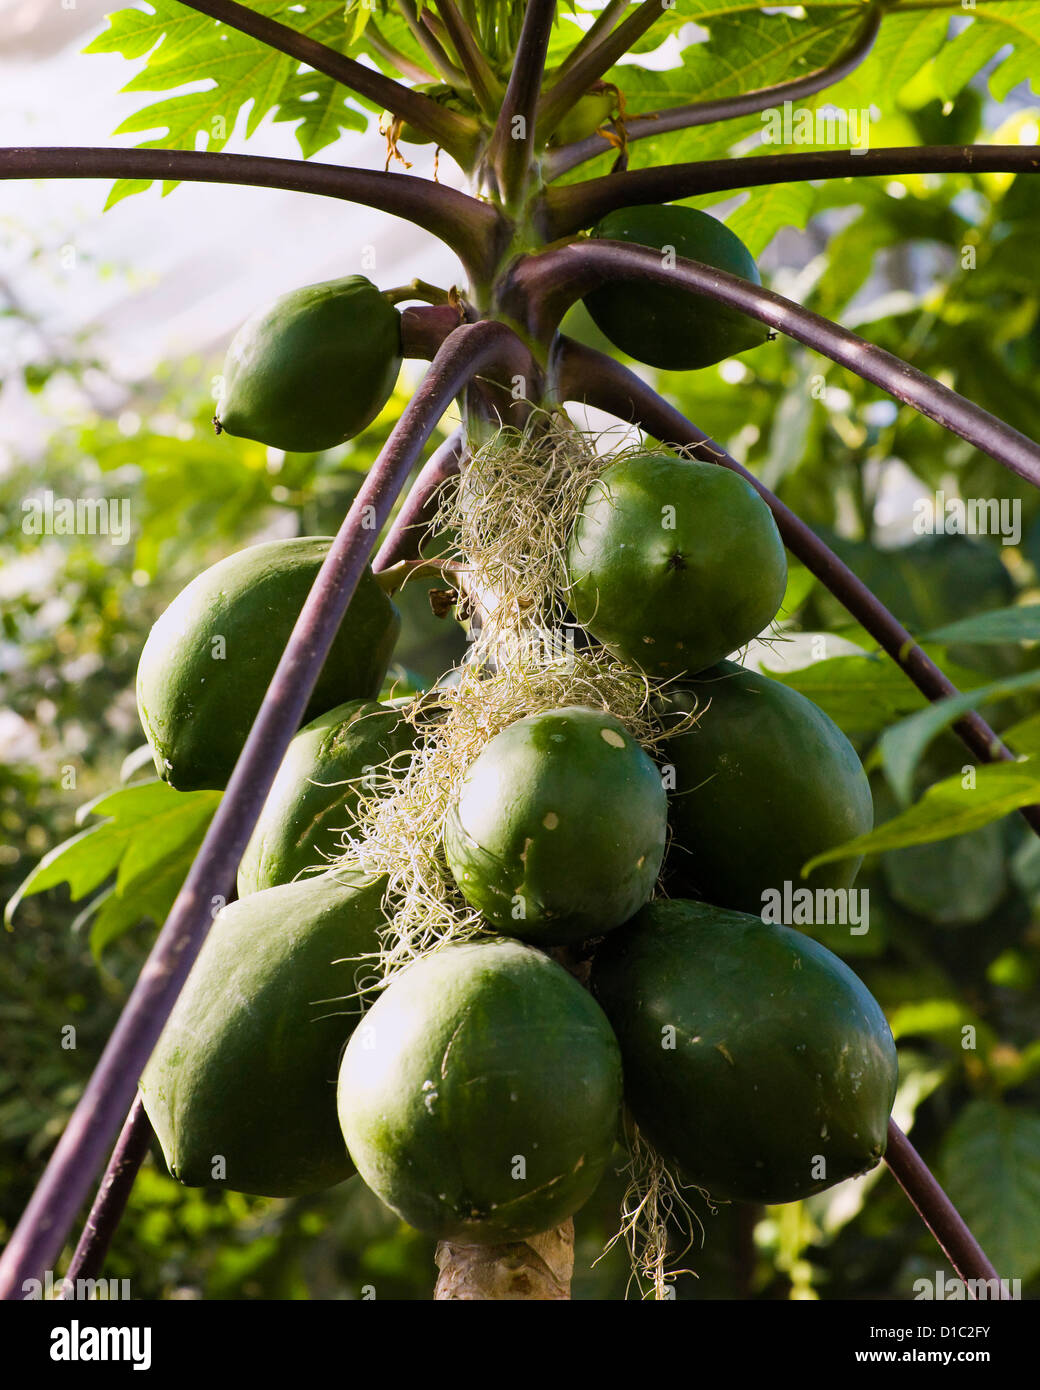 Green papaya fruits on tree Stock Photo